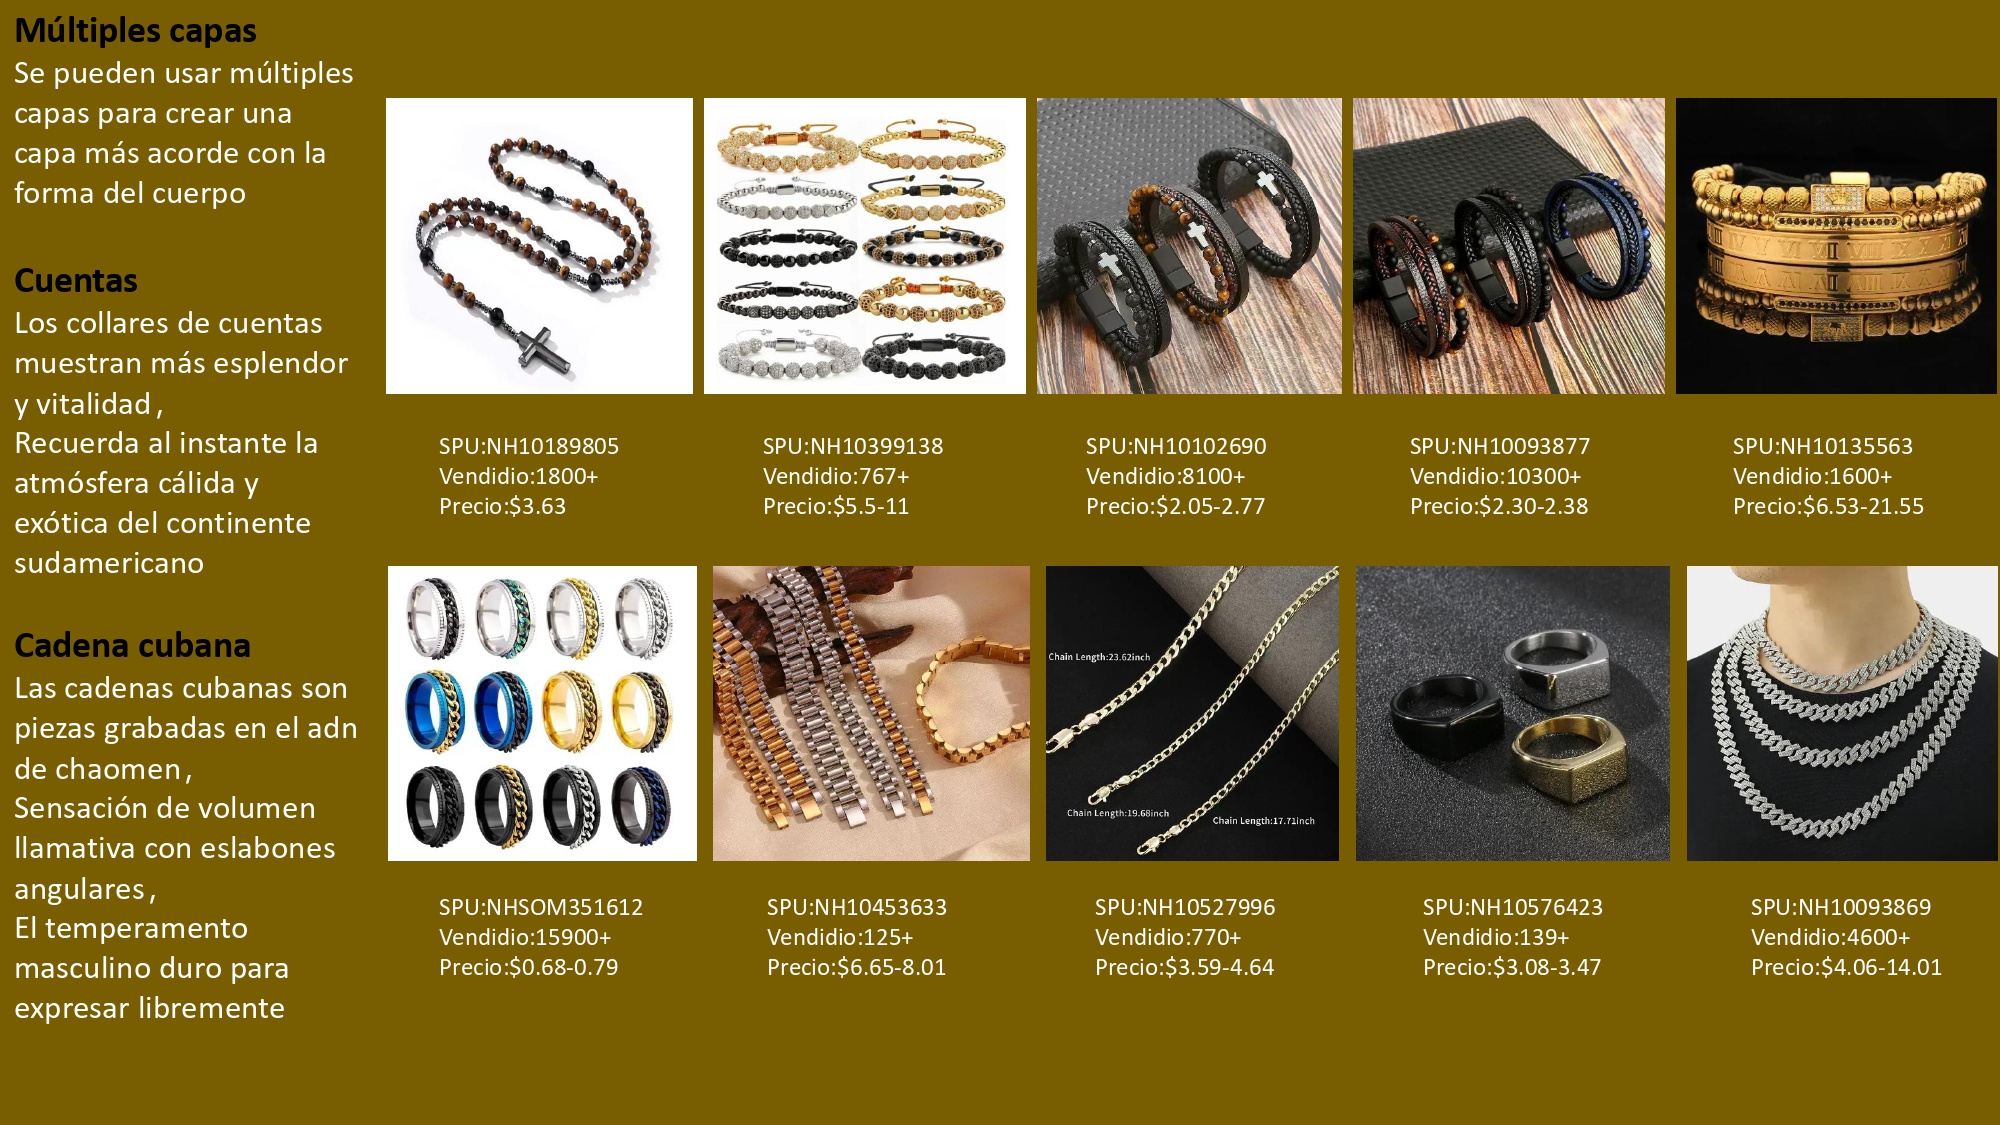 Explore Nihaojewelry para descubrir productos de joyería para hombres de más calidad a precios increíbles.